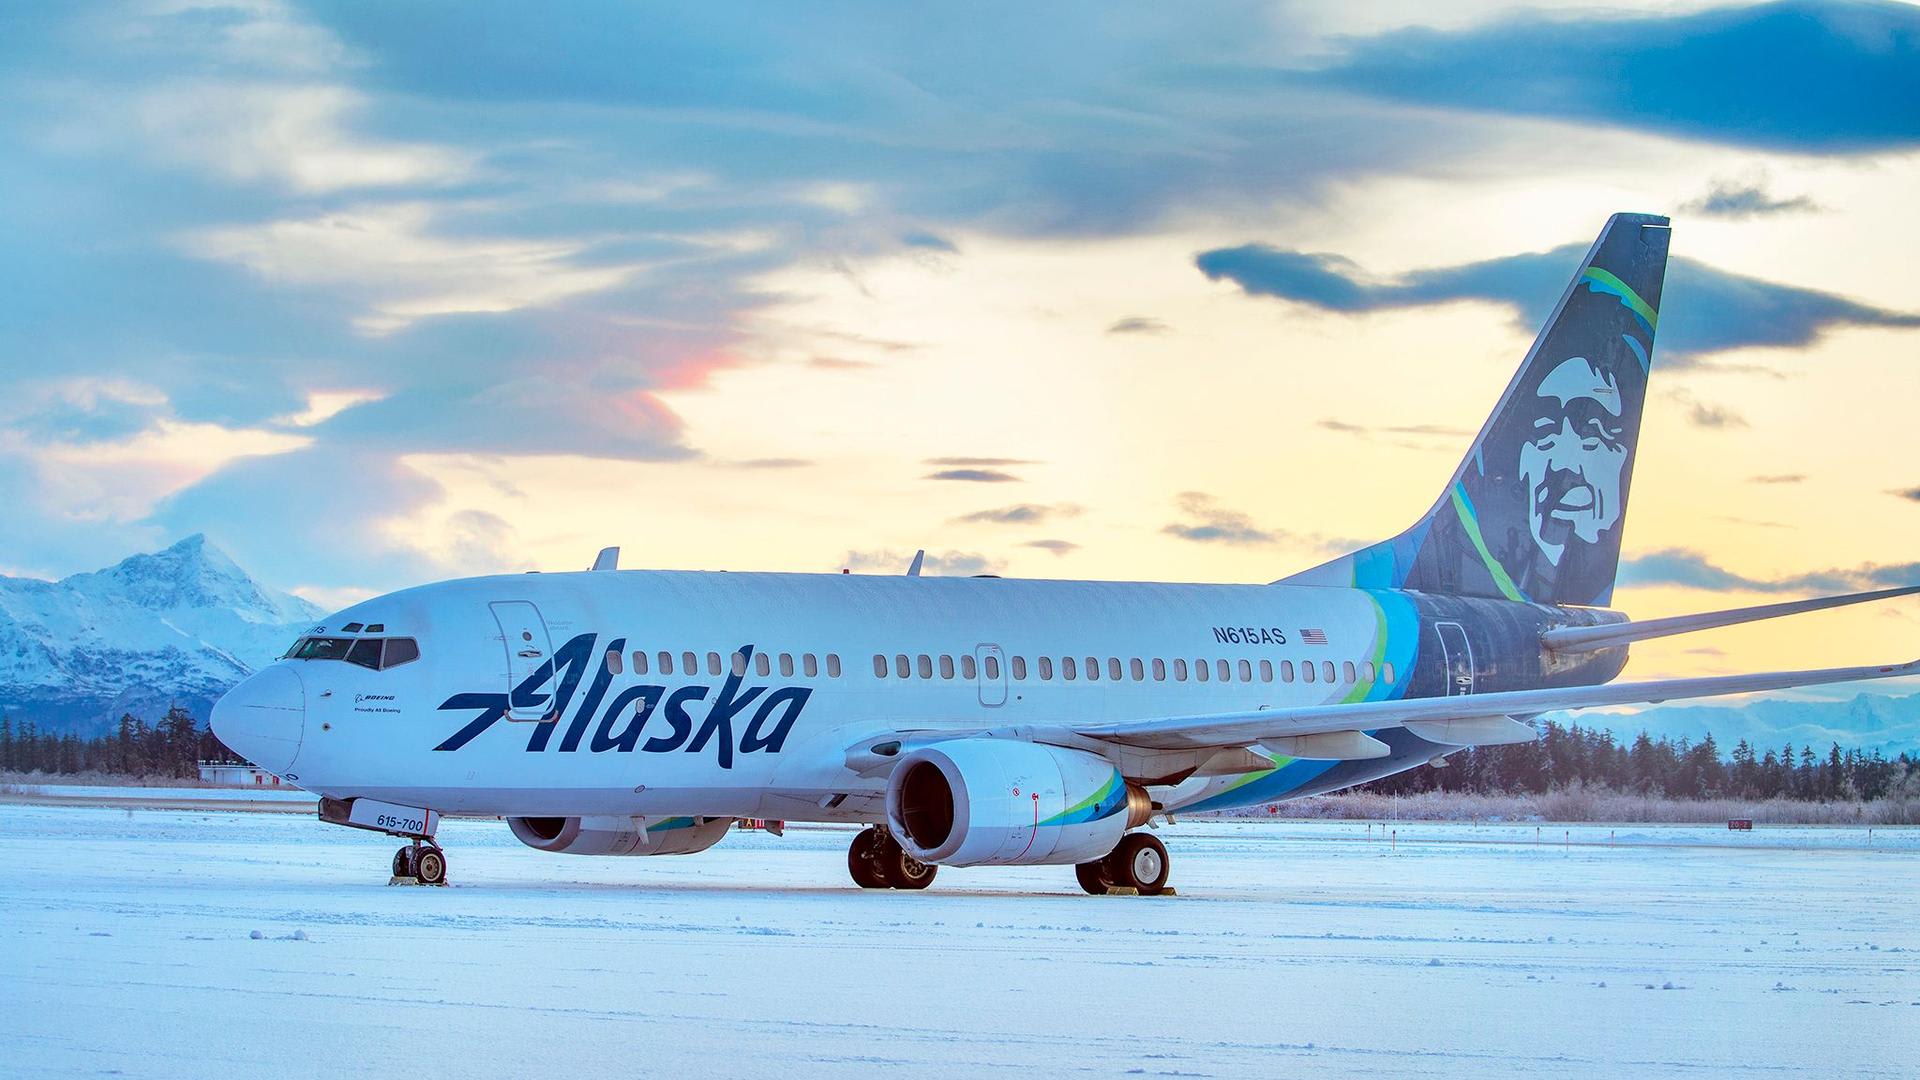 حادث غير متوقع.. طائرة ركاب تصدم دباً على المدرج أثناء الهبوط في ألاسكا